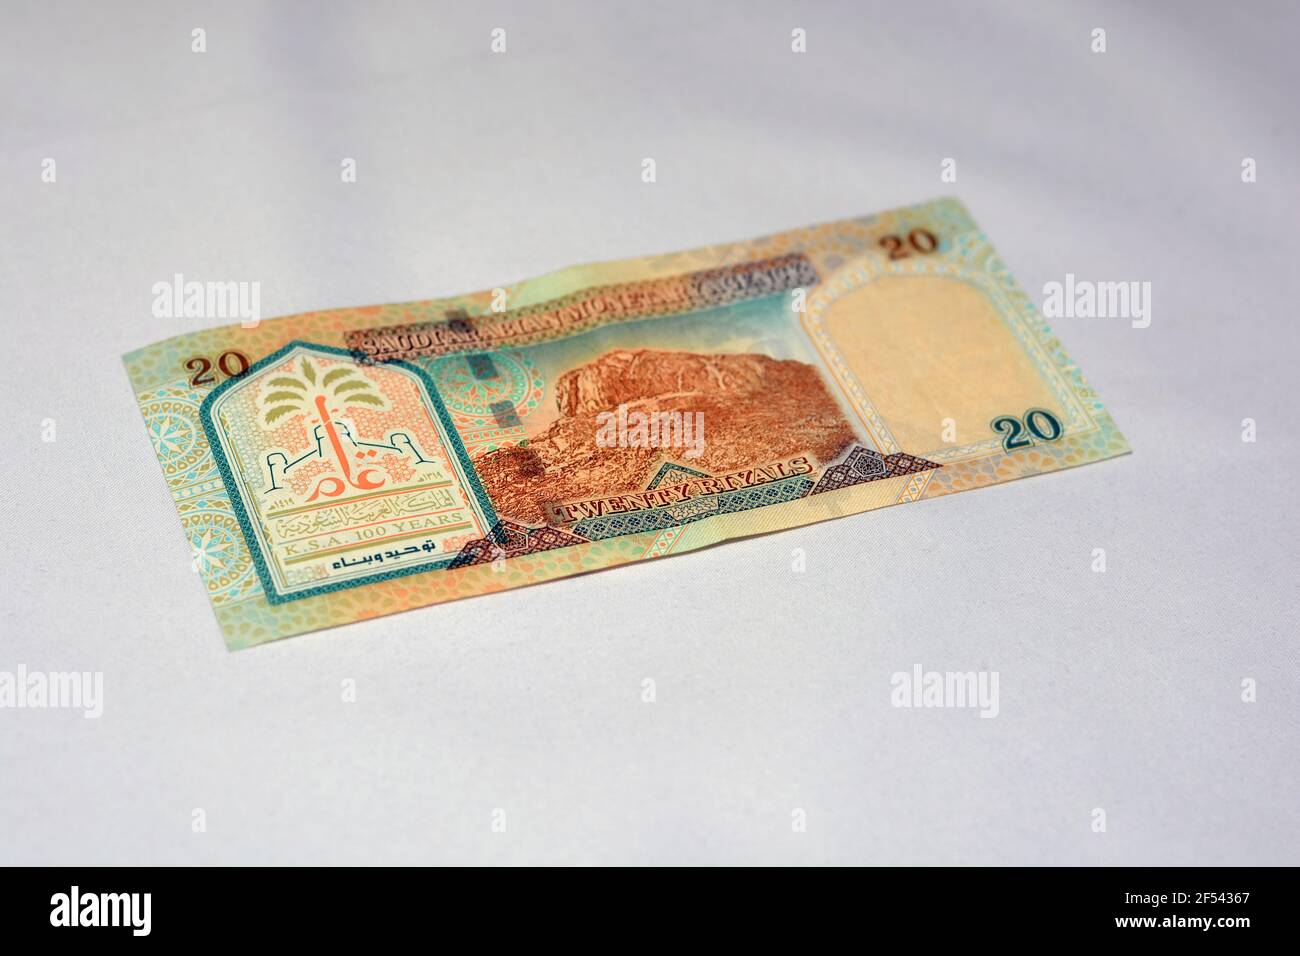 Arabie saoudite billet de banque 20 riyals, le riyal saoudien est la monnaie de l'Arabie Saoudite, foyer sélectif du royaume saoudien vingt riyals cash Banque D'Images